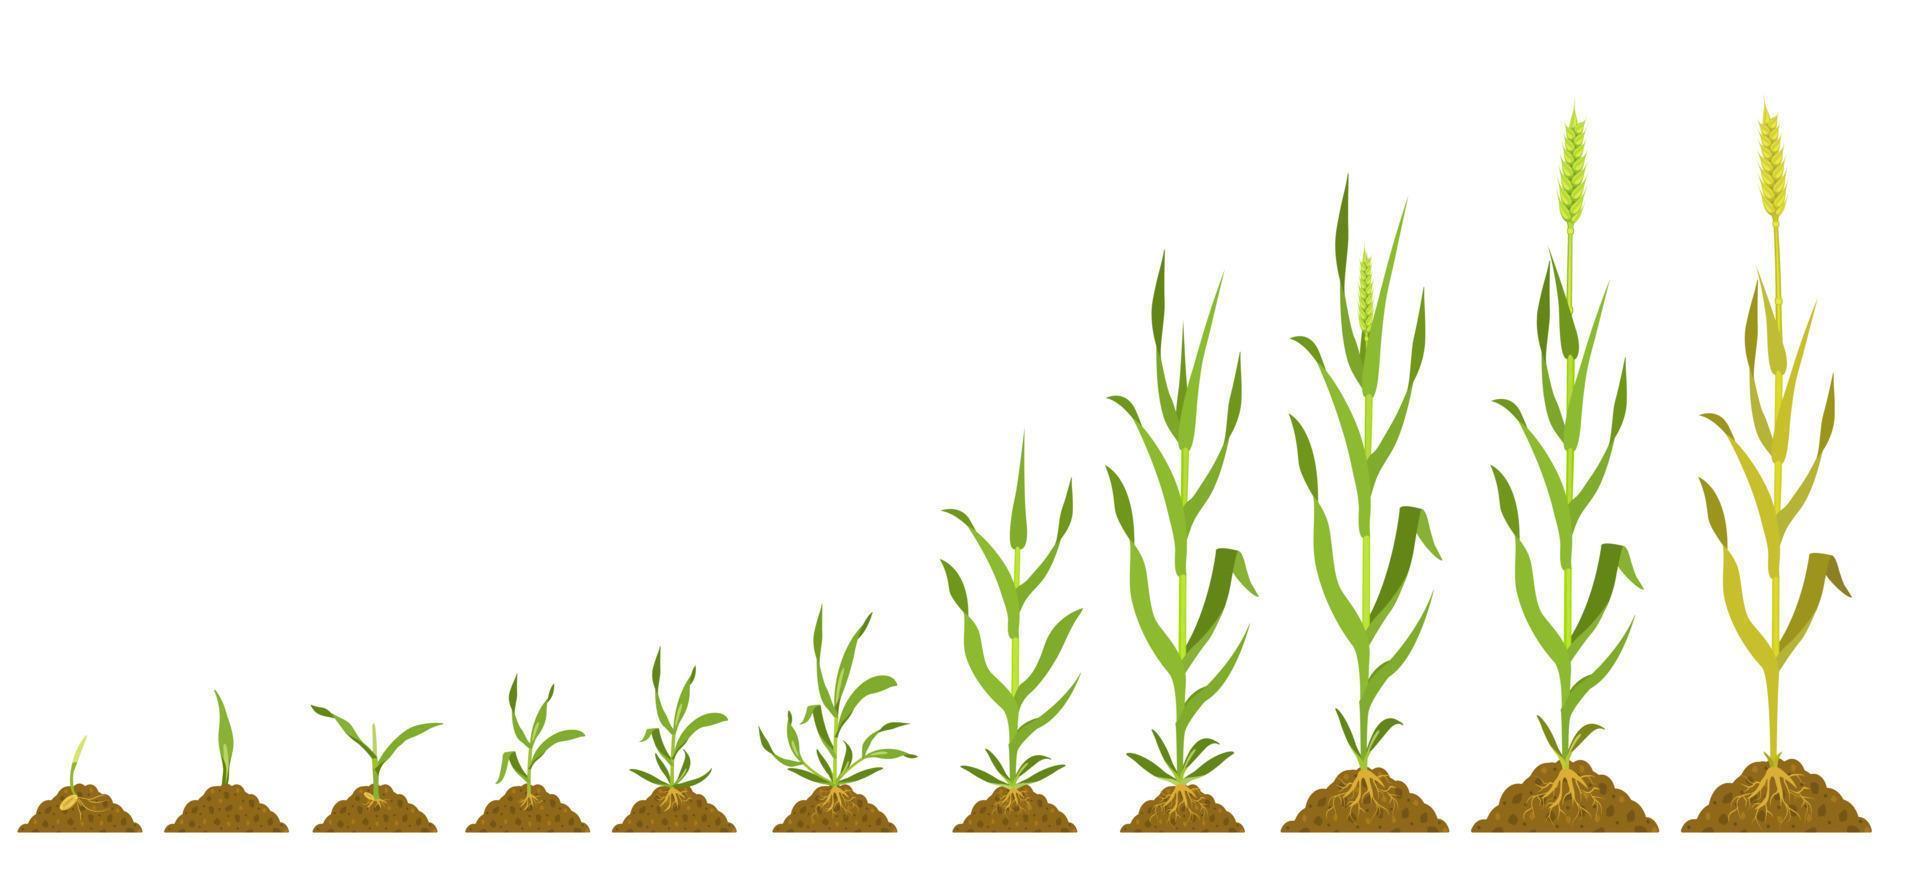 estágios de crescimento do trigo. germinação de ilustração botânica vetorial e colheitas de amadurecimento. vetor